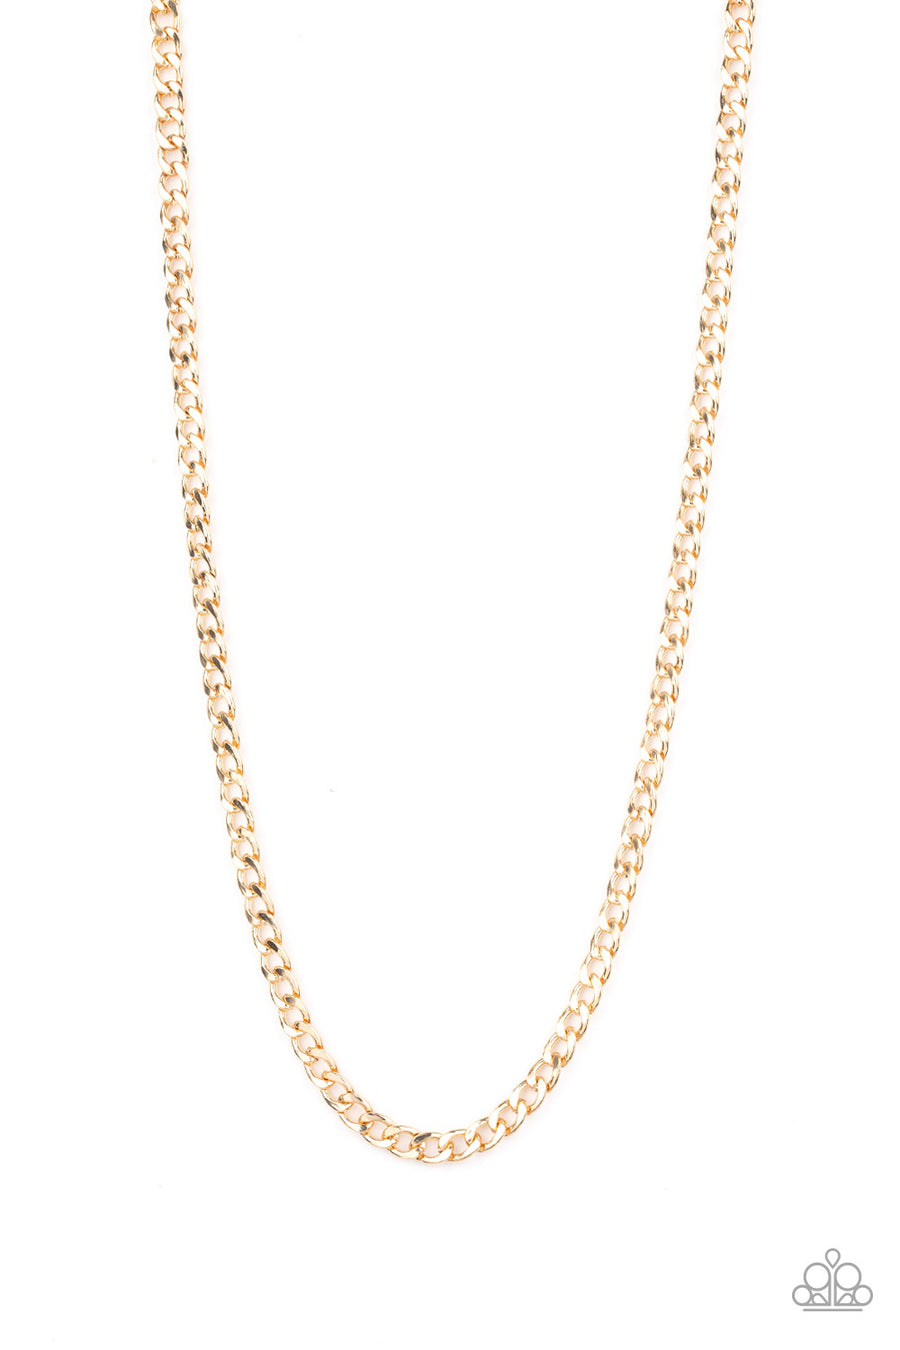 Delta  - Gold Urban Chain Necklace - Paparazzi Accessories